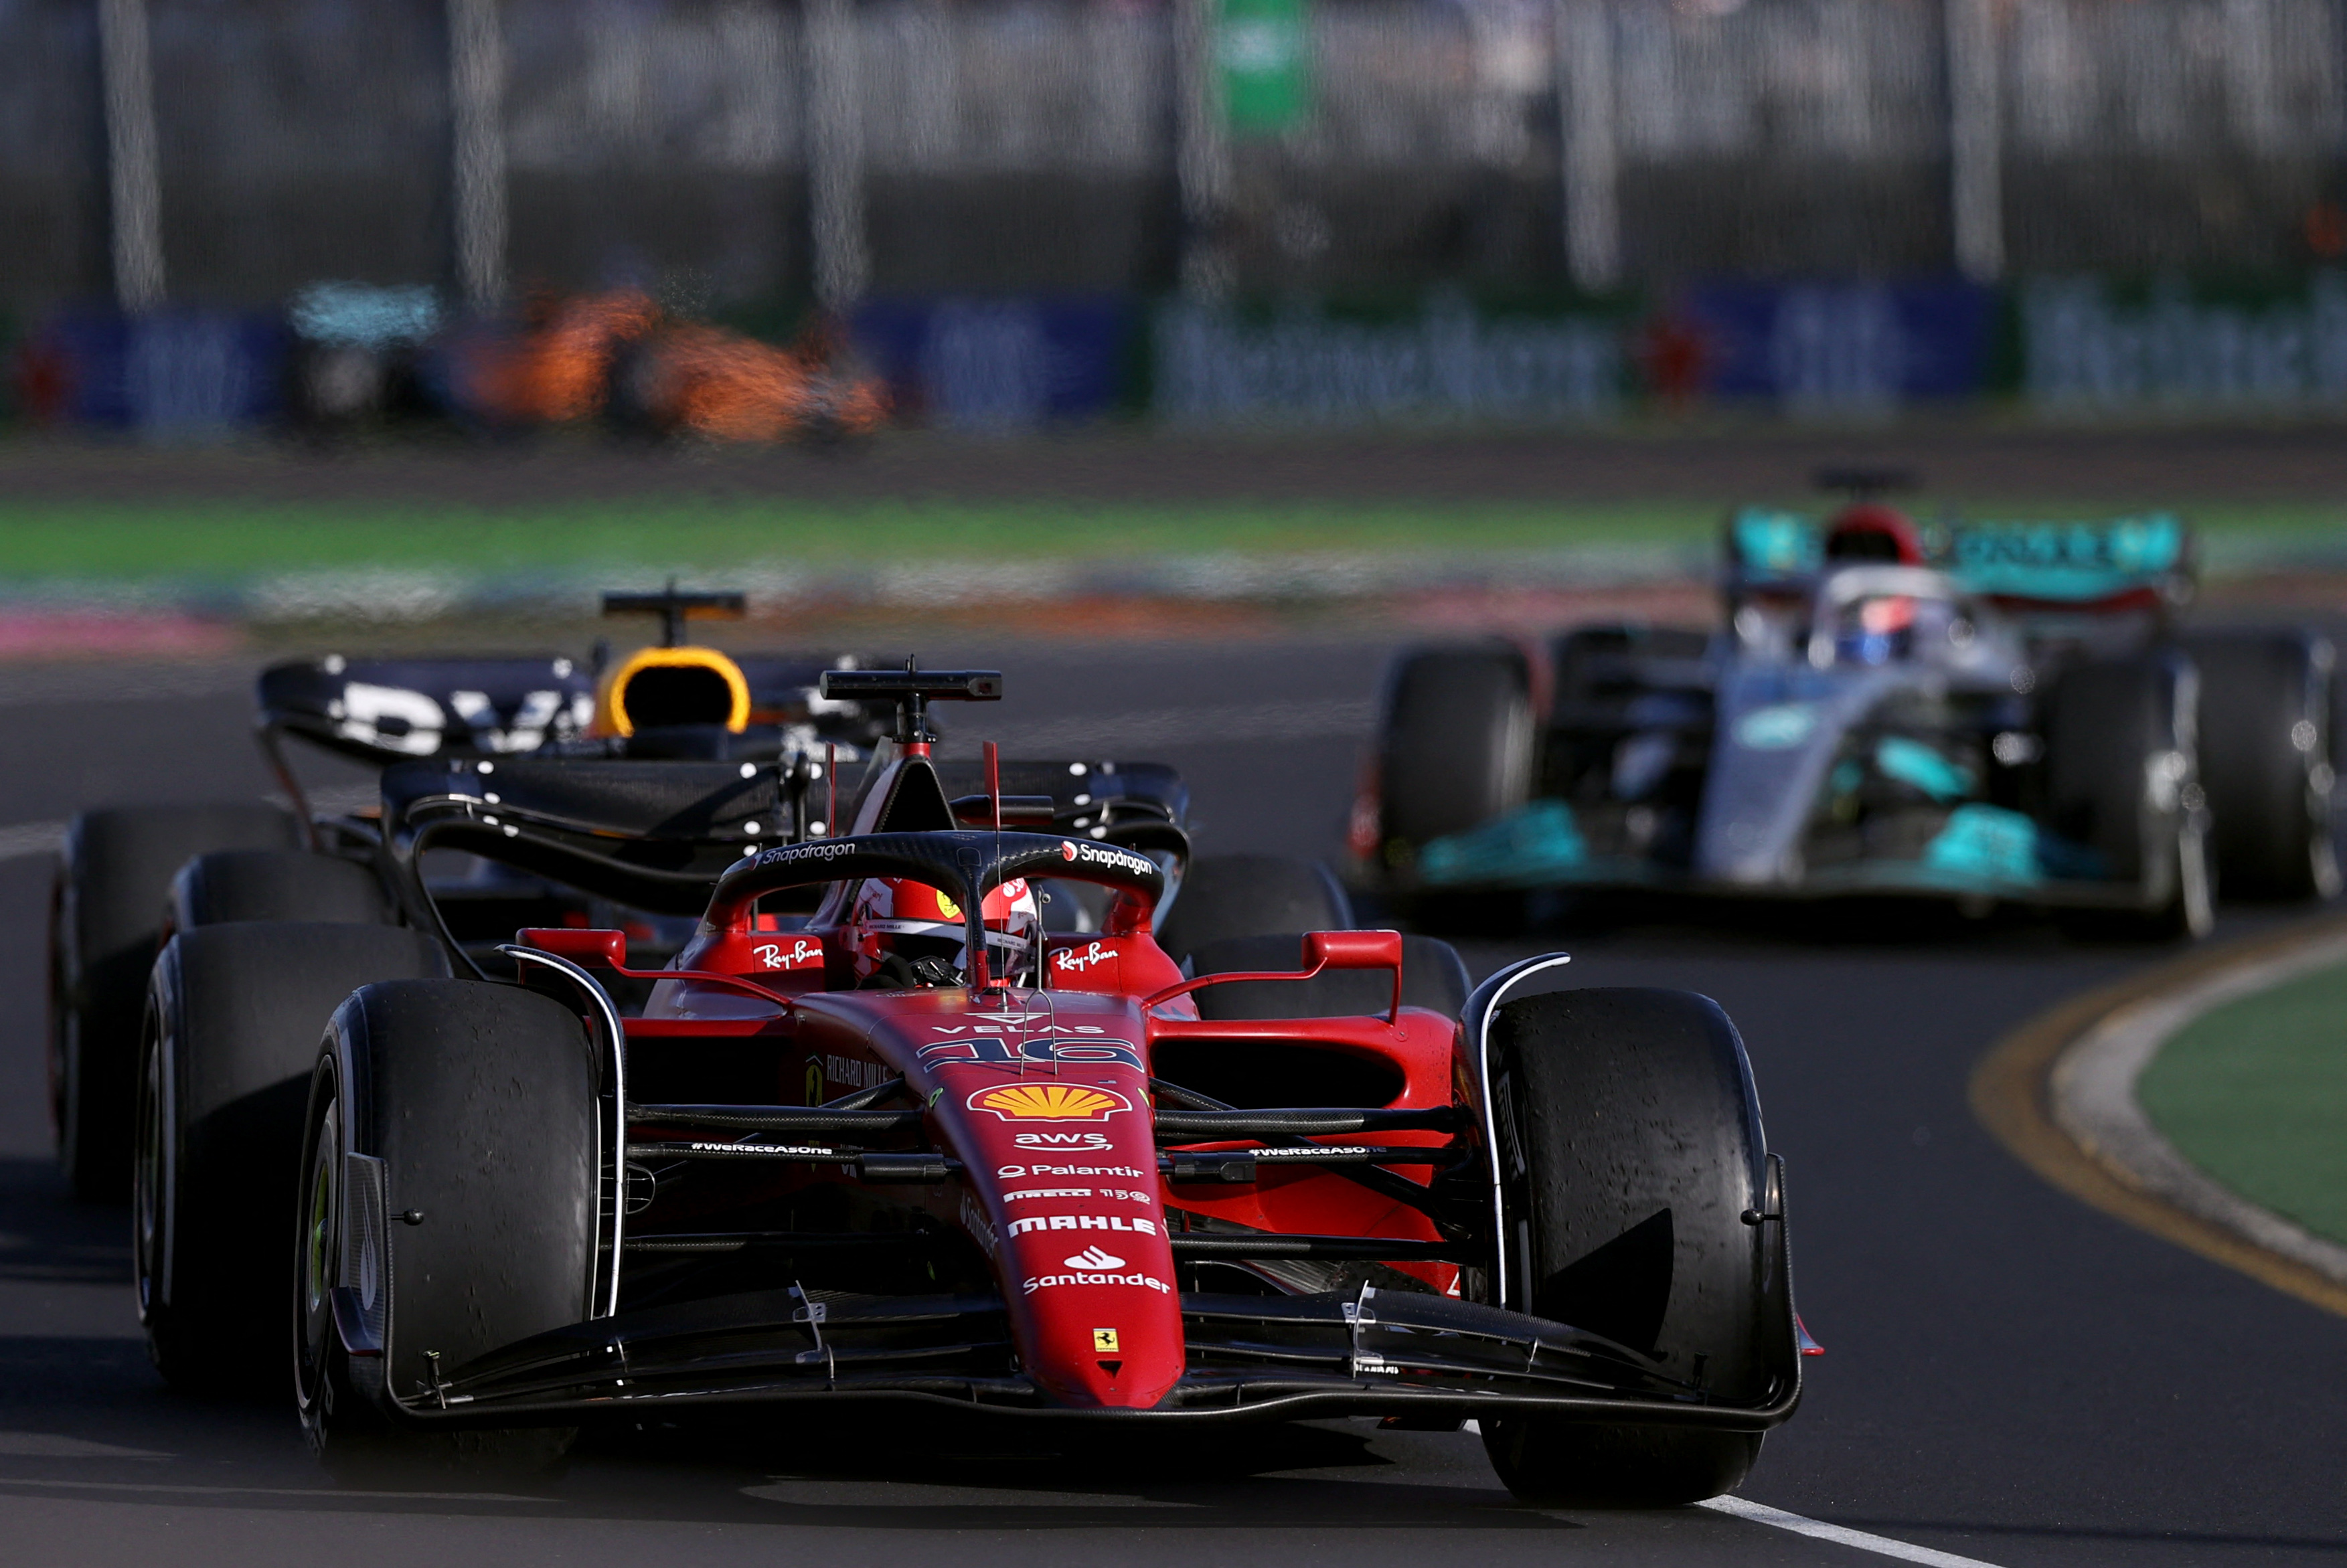 Por ahora Ferrari es el equipo a vencer en la F1. Charles Leclerc (foto) ganó dos de las tres carreras disputadas (REUTERS/Loren Elliott)